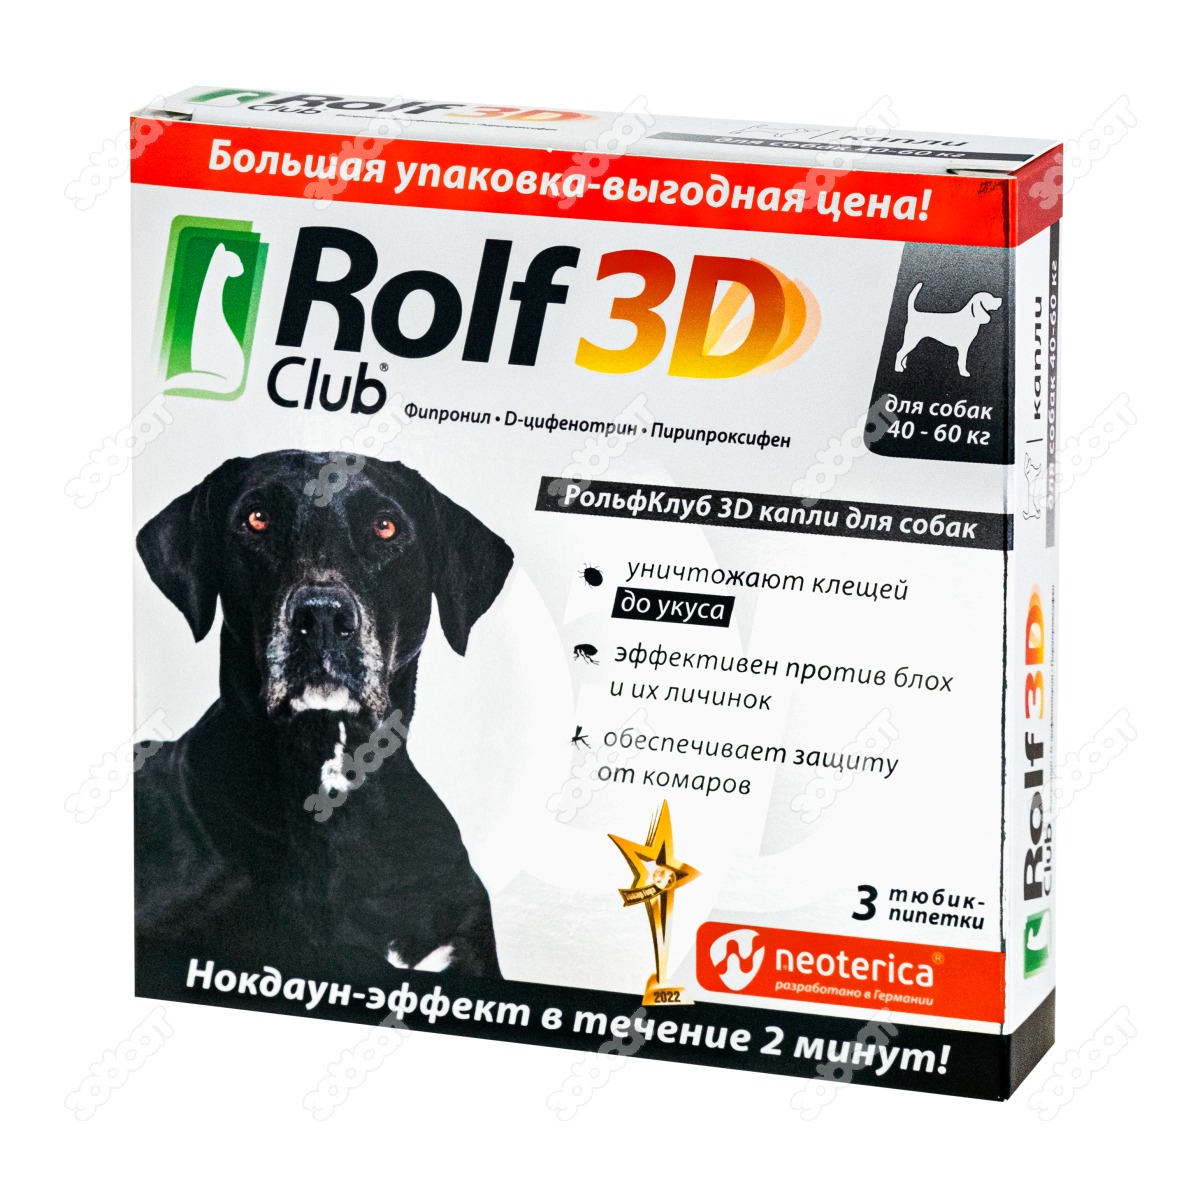 Рольф 3д капли для собак отзывы. Rolf Club 3d капли для собак 3 штуки. Rolf Club 3d капли для собак 4-10 кг, 3 пипетки, арт. R445. Капли от клещей для собак РОЛЬФ 3д. РОЛЬФ клуб 3d капли д/собак 40-60кг (1пип).